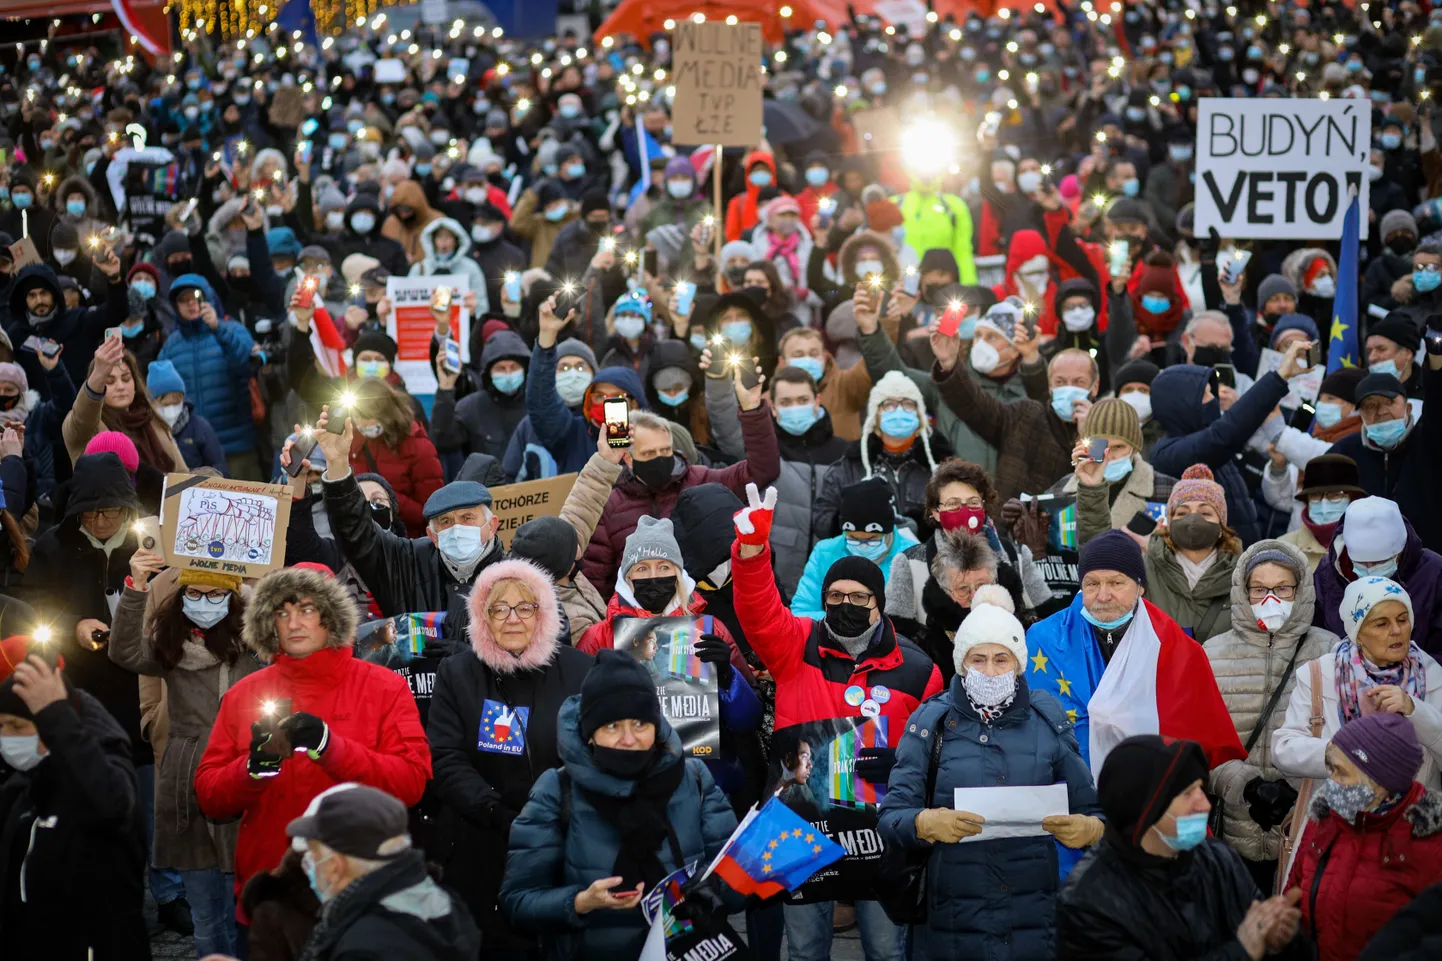 Poolakad protestimas 19. detsembril Krakowis meediaseaduse vastu.